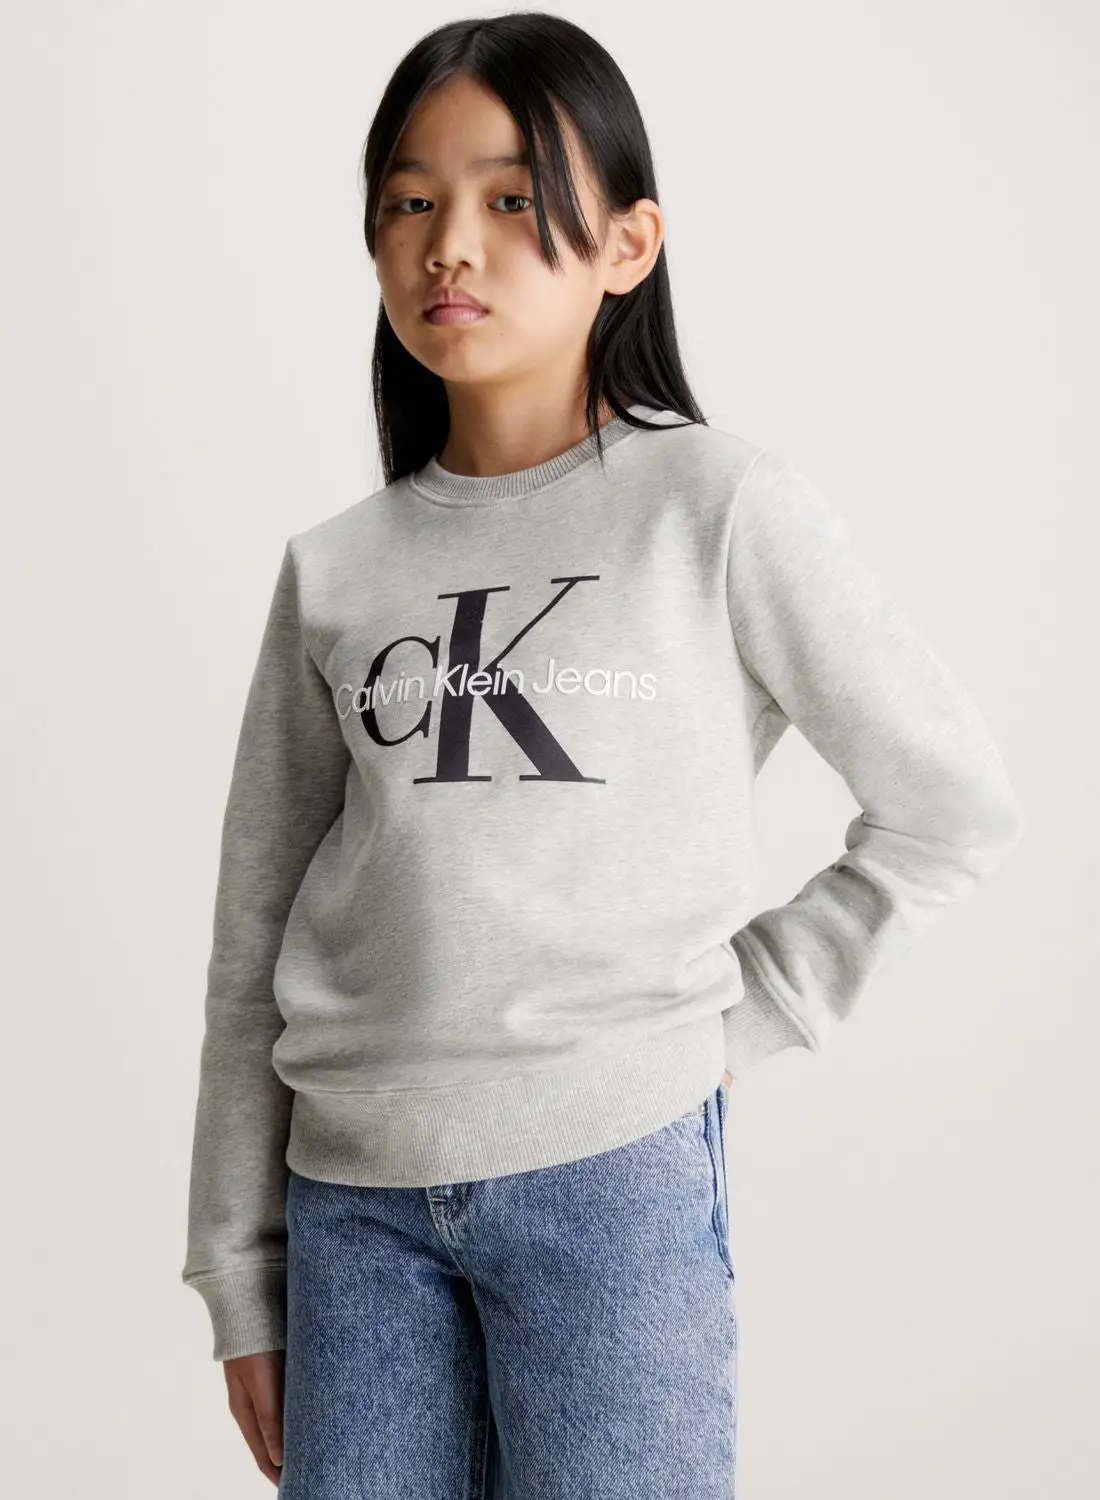 Calvin Klein Jeans Kids Monogram Sweatshirt